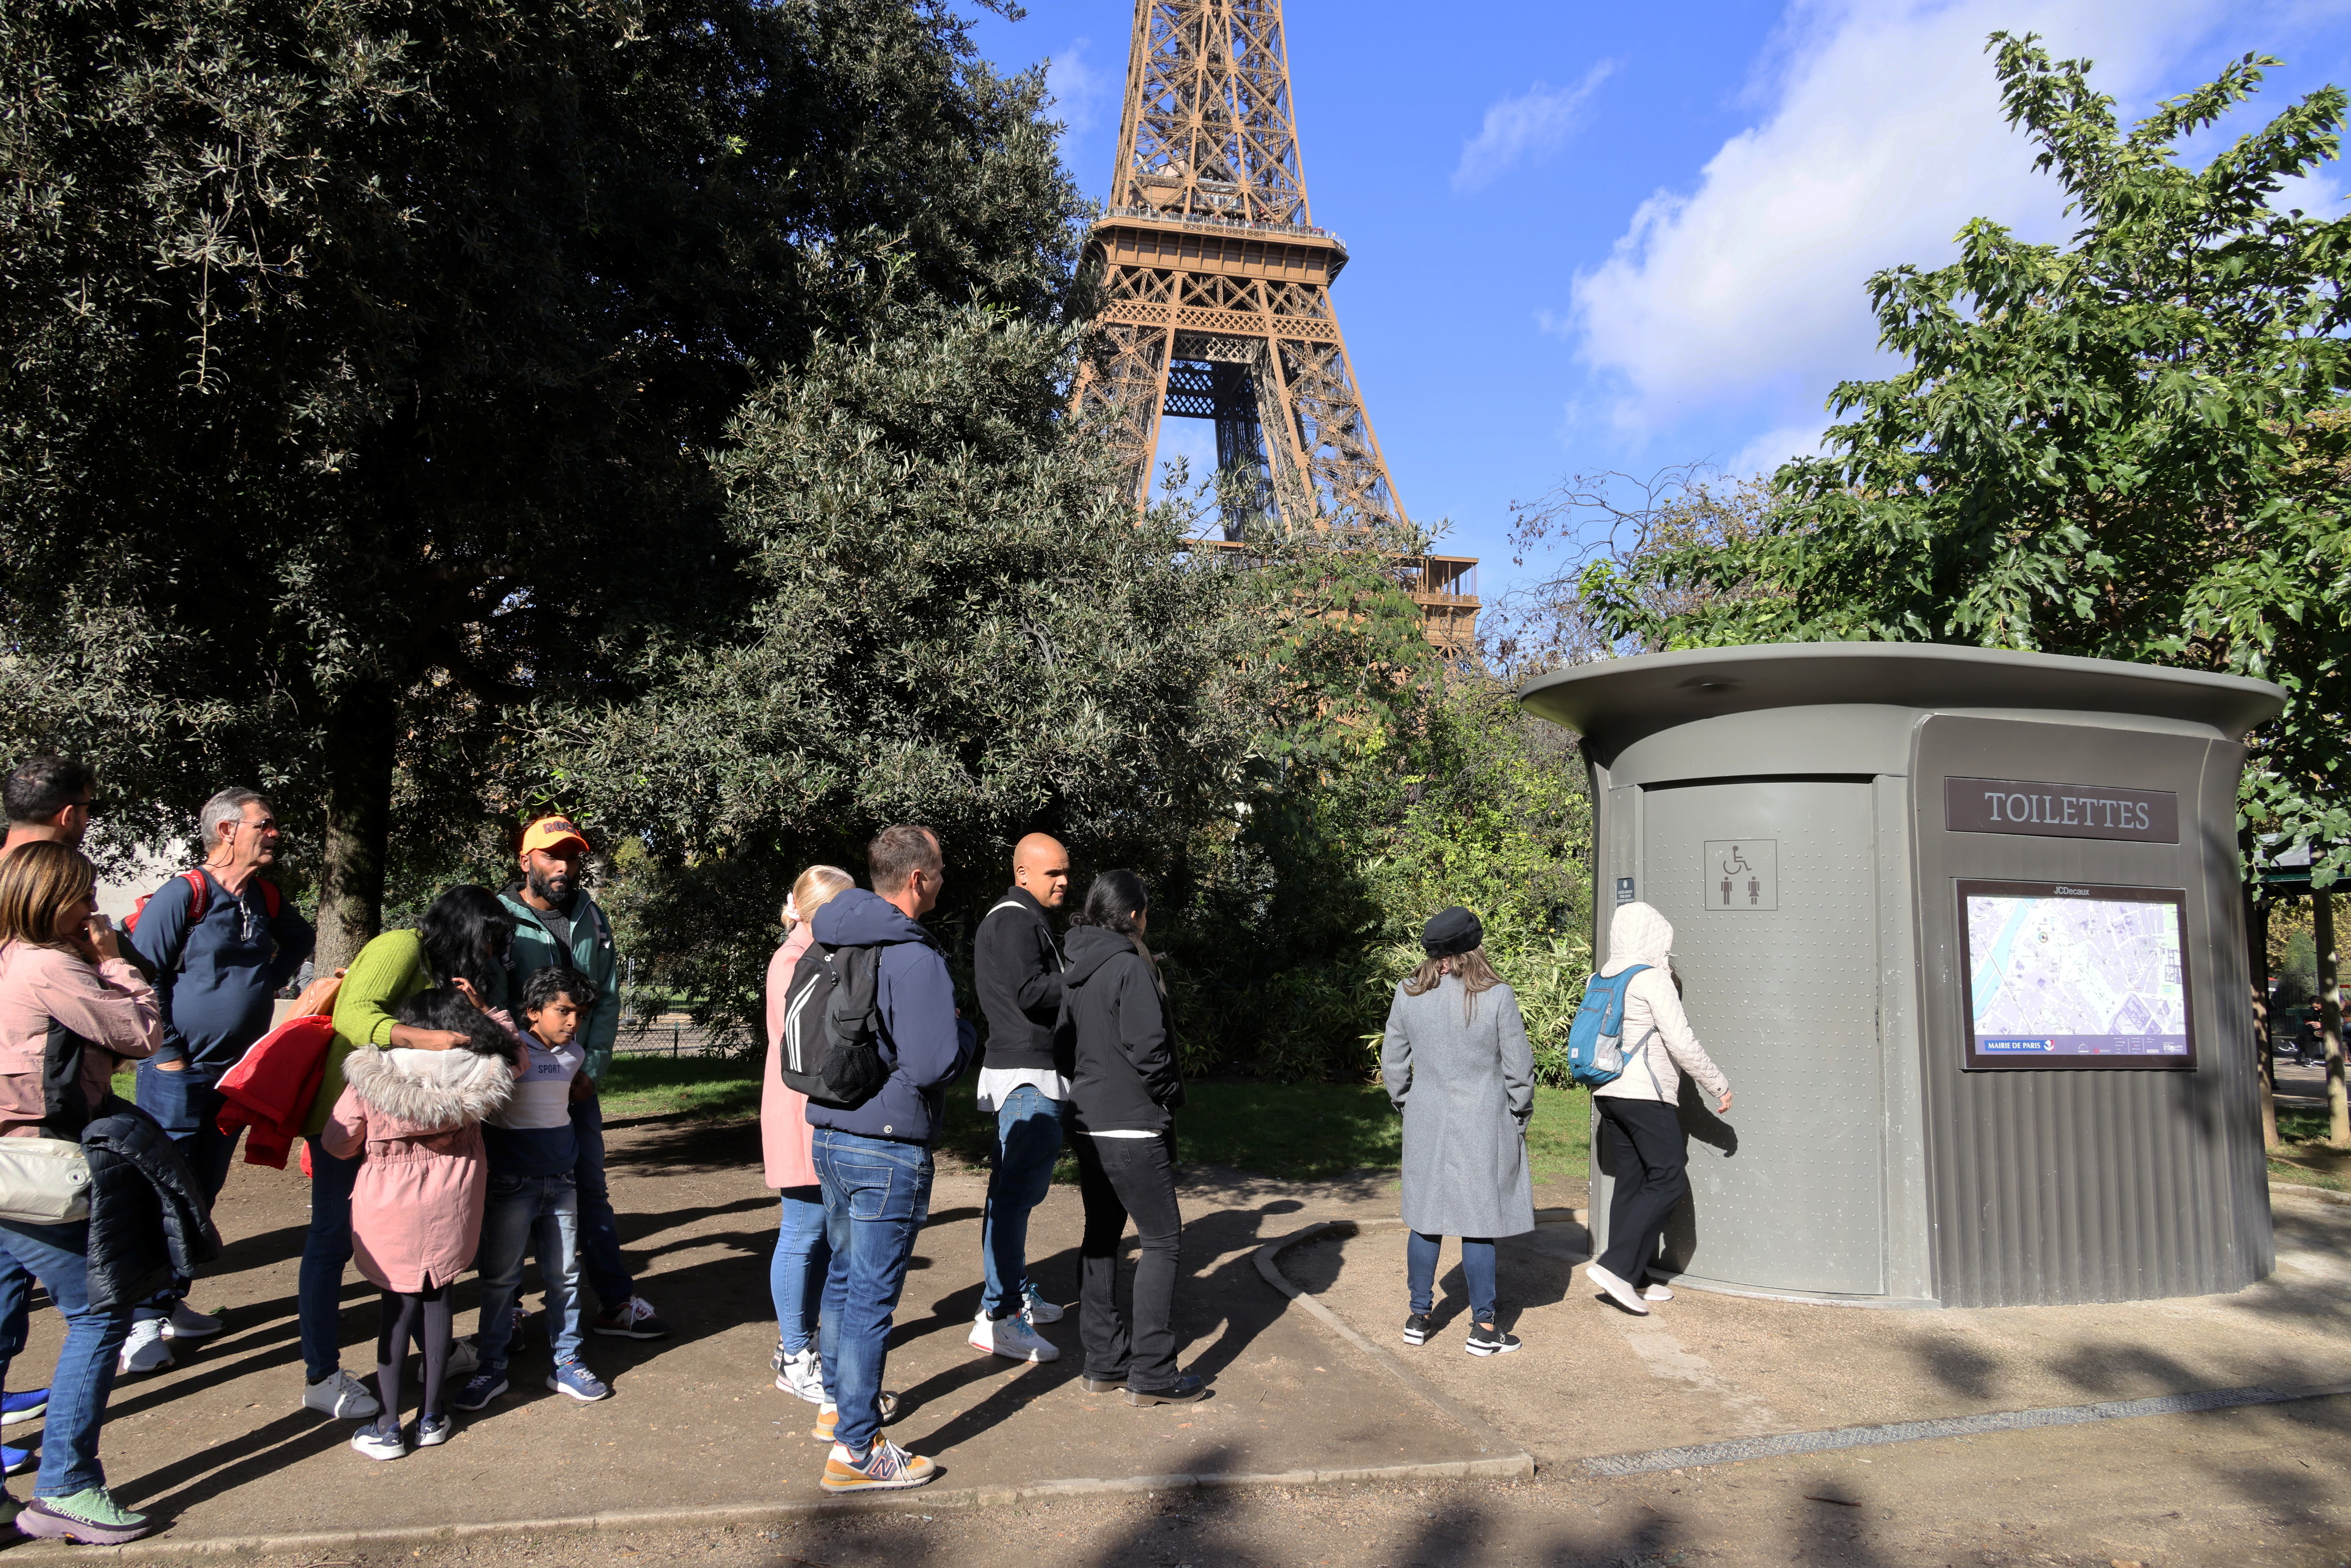 L'installation de sanitaires supplémentaires sur les bords de Seine est cruciale, la journée du 26 juillet s'annonçant dense pour les spectateurs (Illustration). LP/Delphine Goldsztejn